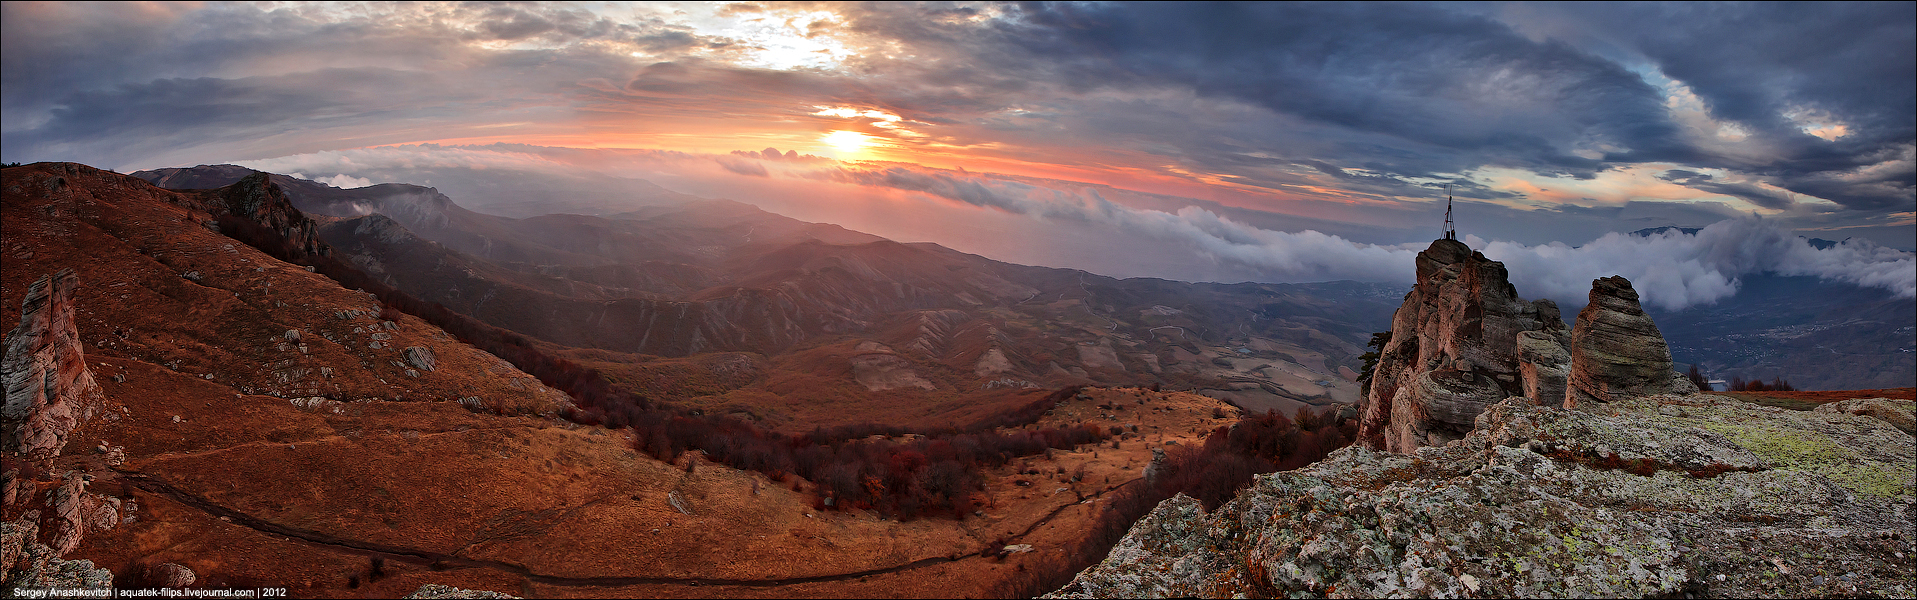 10 панорам крымской осени 